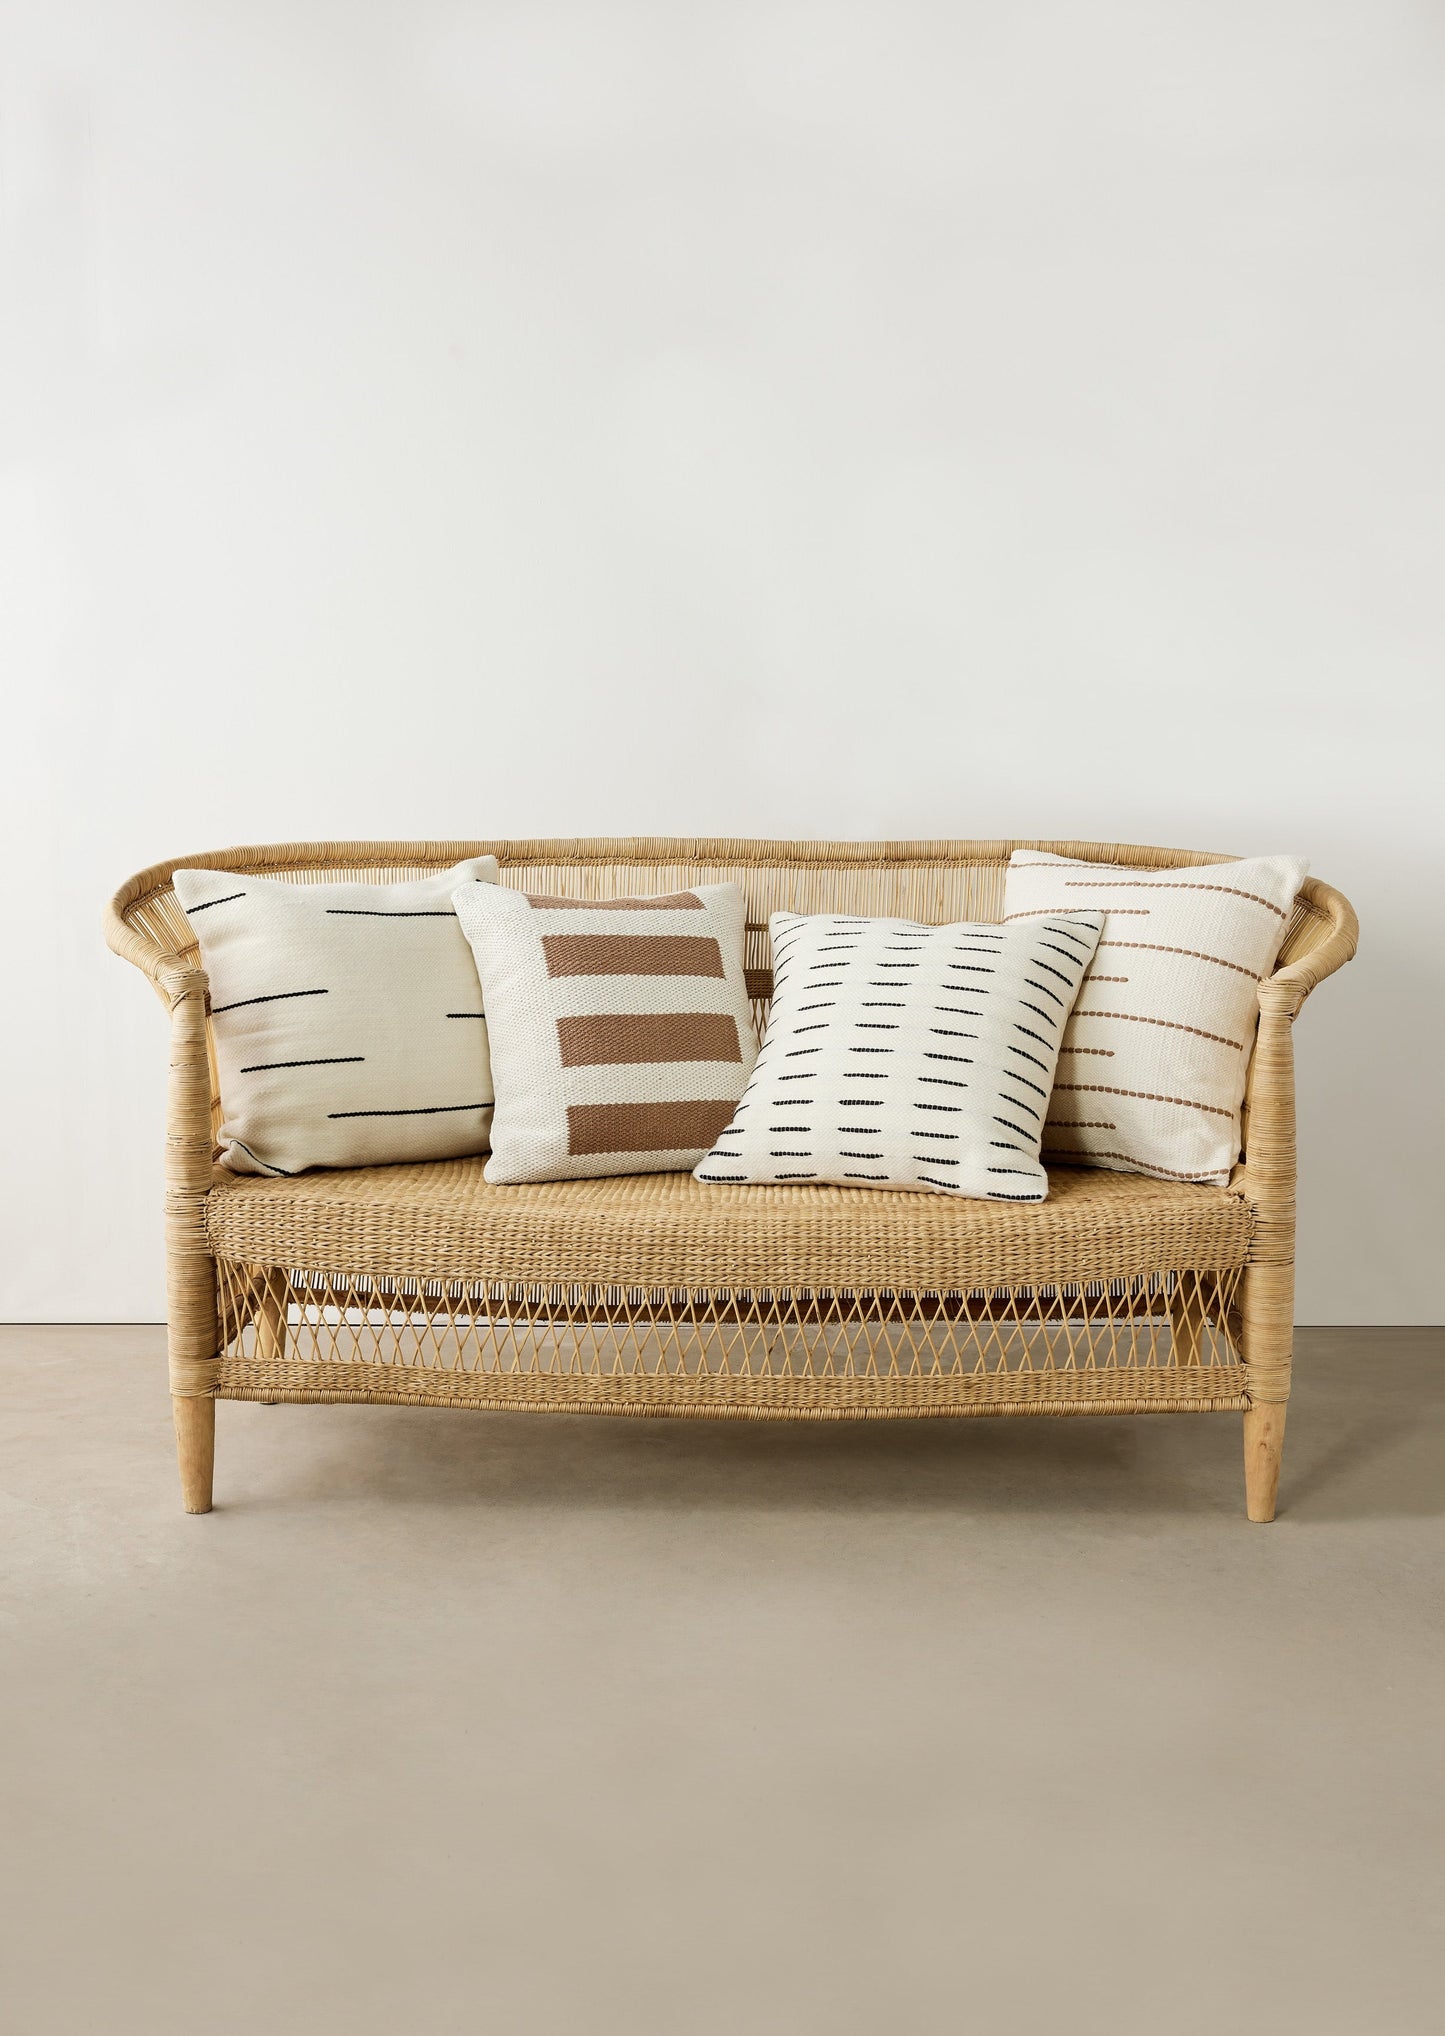 African Modern Luxury Boho Throw Pillow: Asha Organic New Zealand Wool and Linen Decorative Pillow